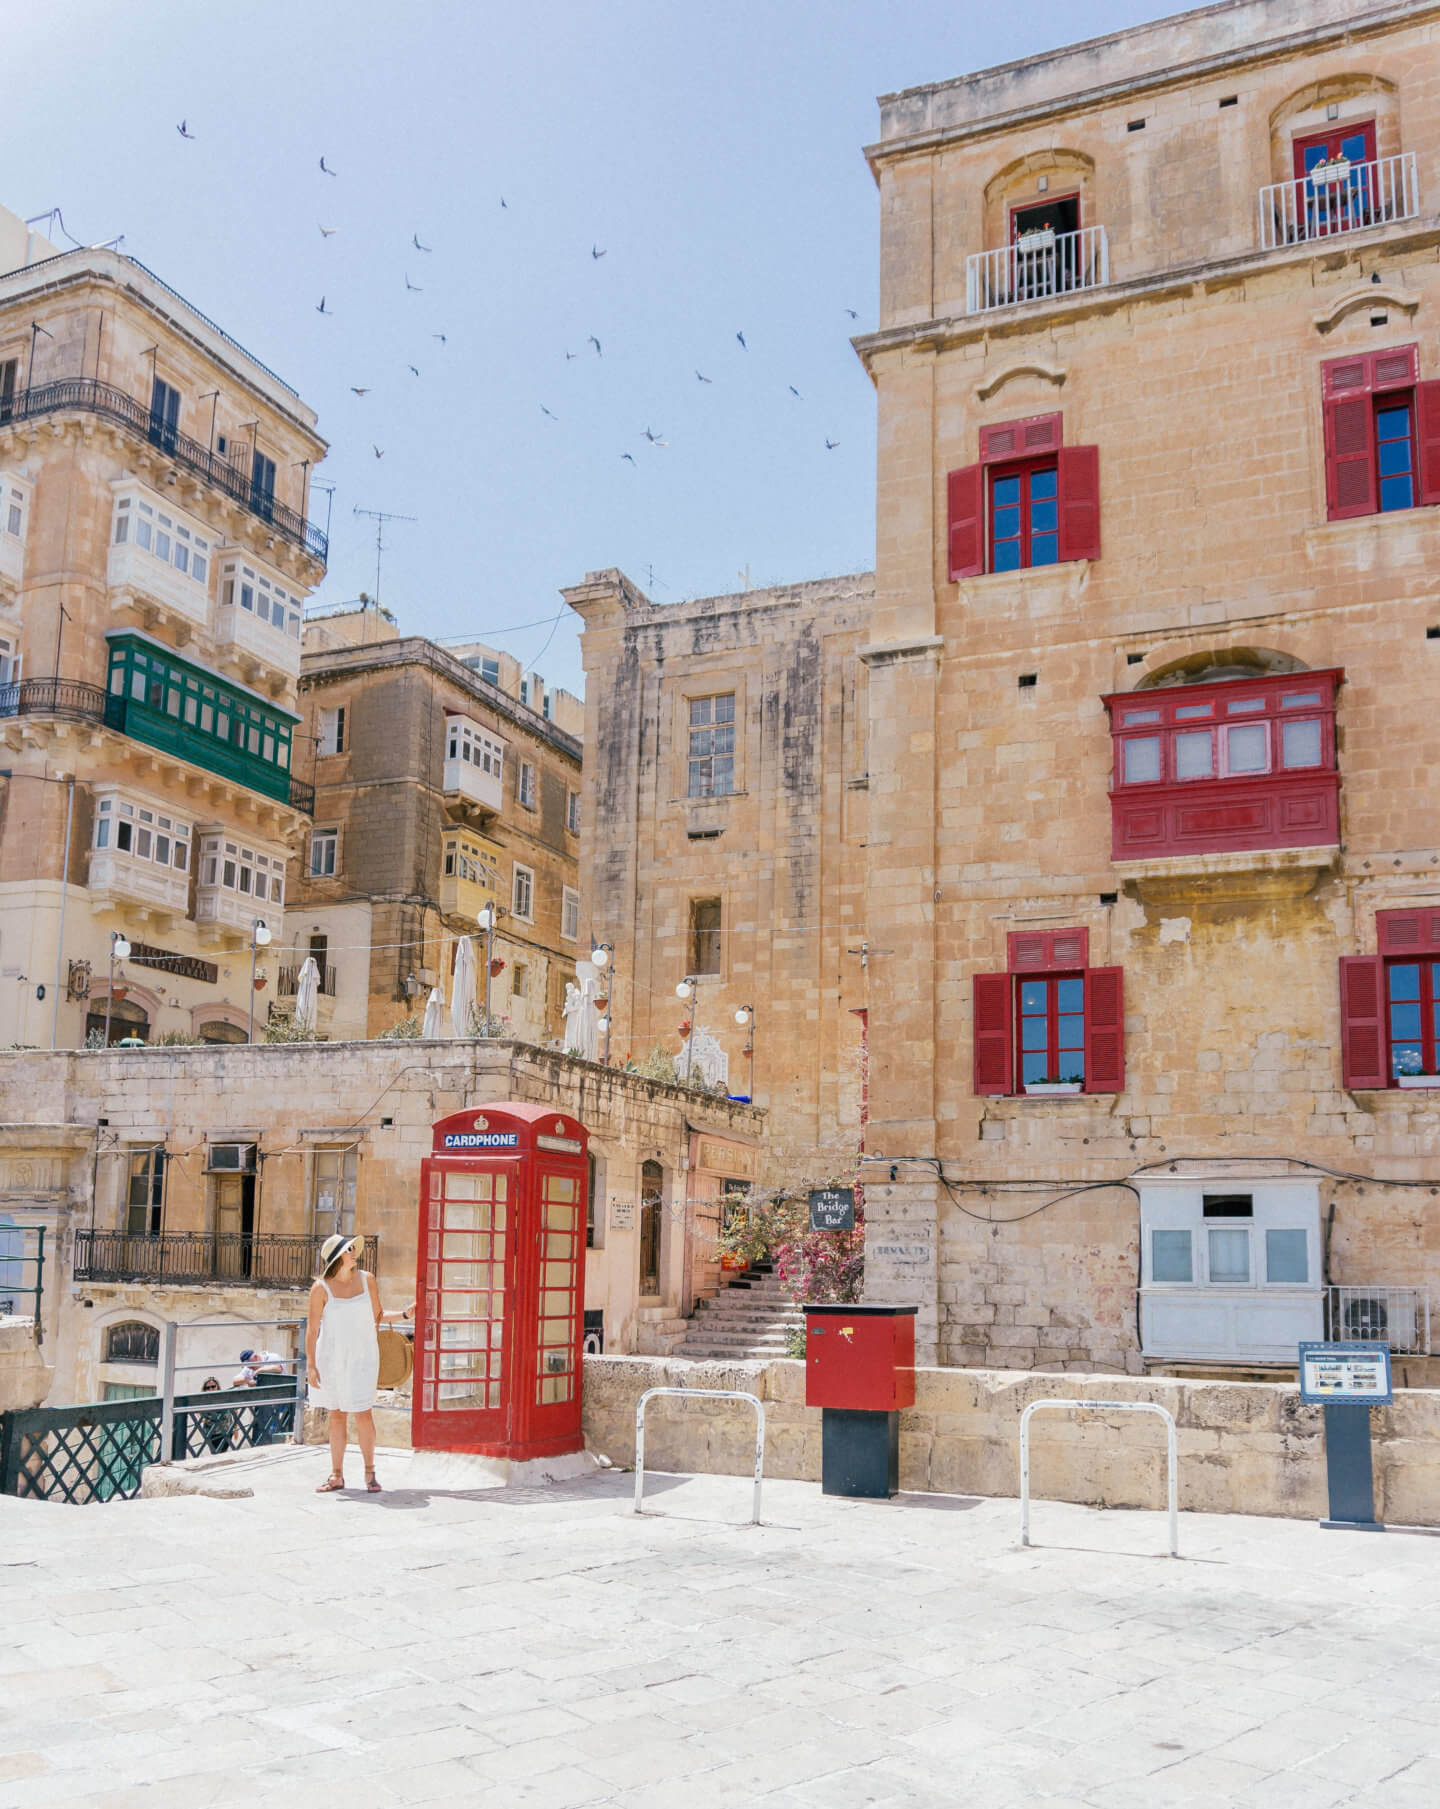 Malta Travel Guide: “Europe's Best Kept Secret”